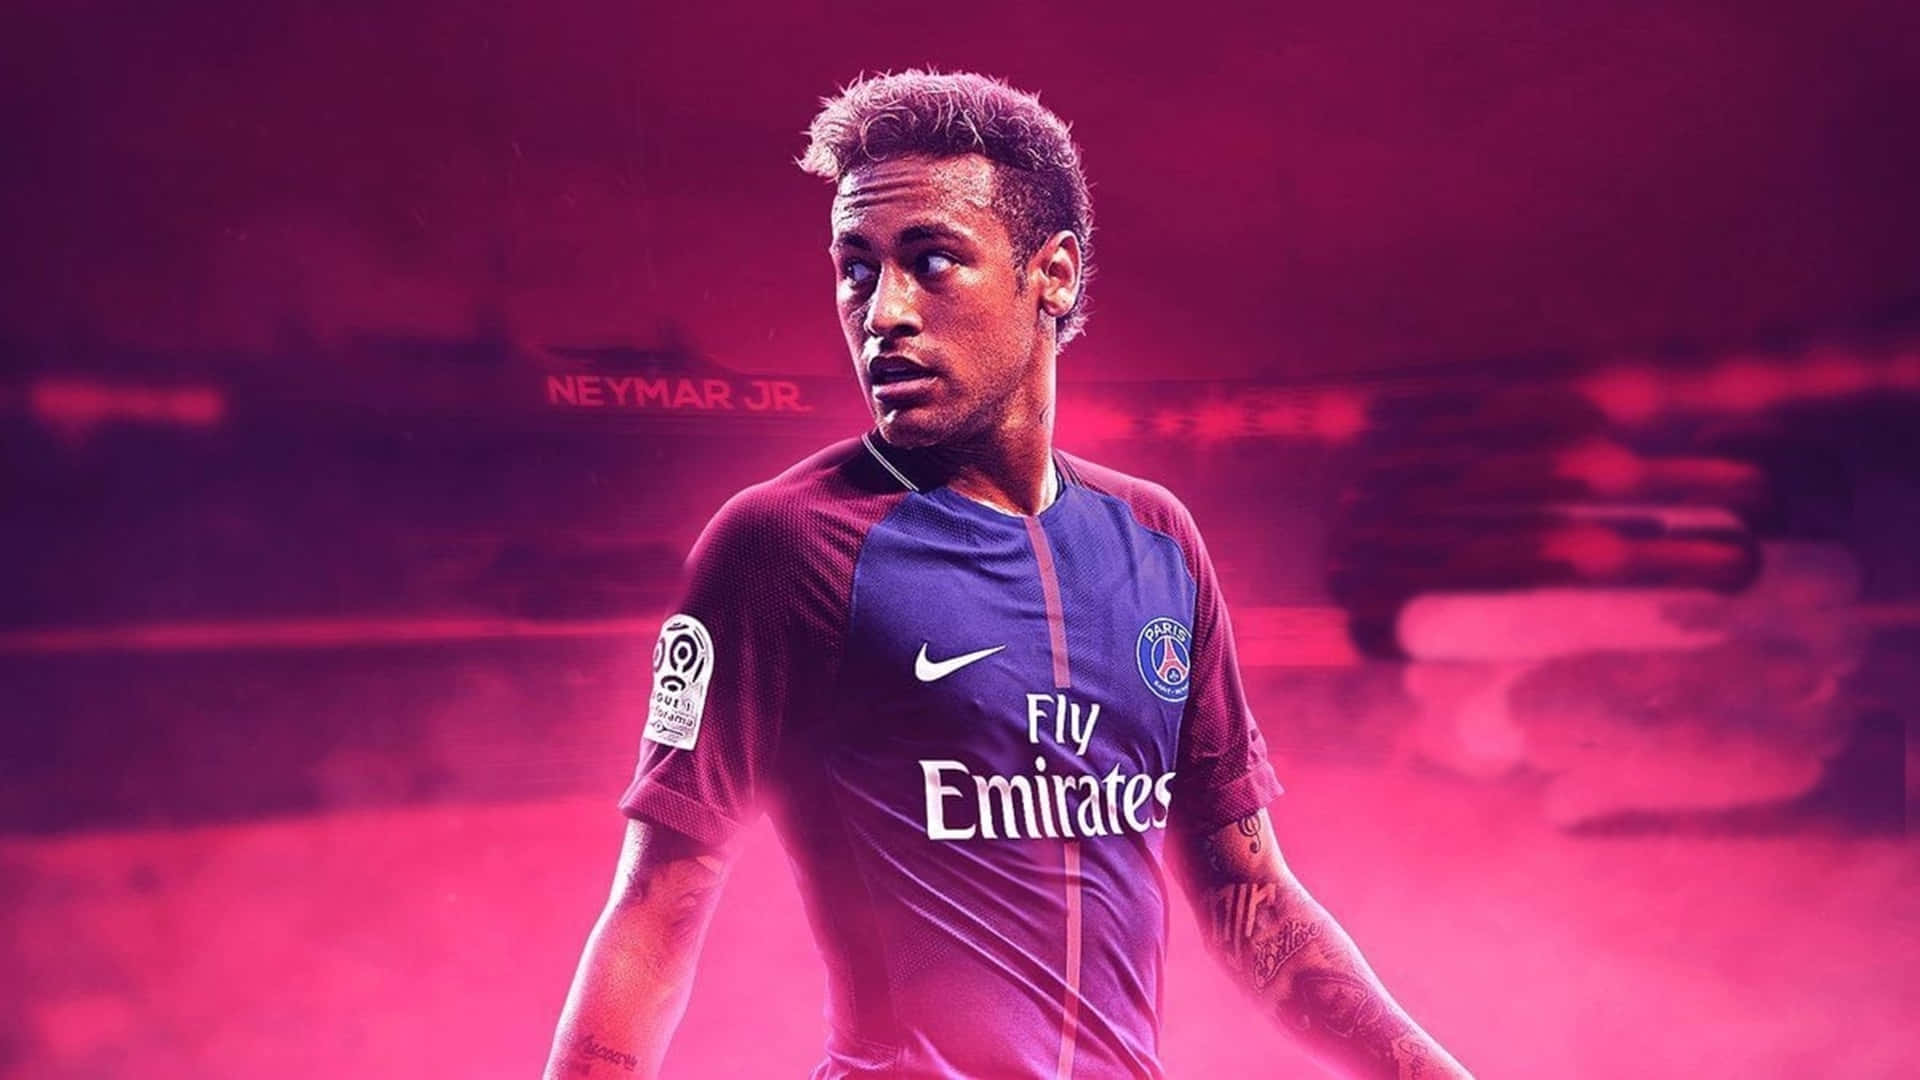 Neymar Ultra Hd Famous Football Player Wallpaper